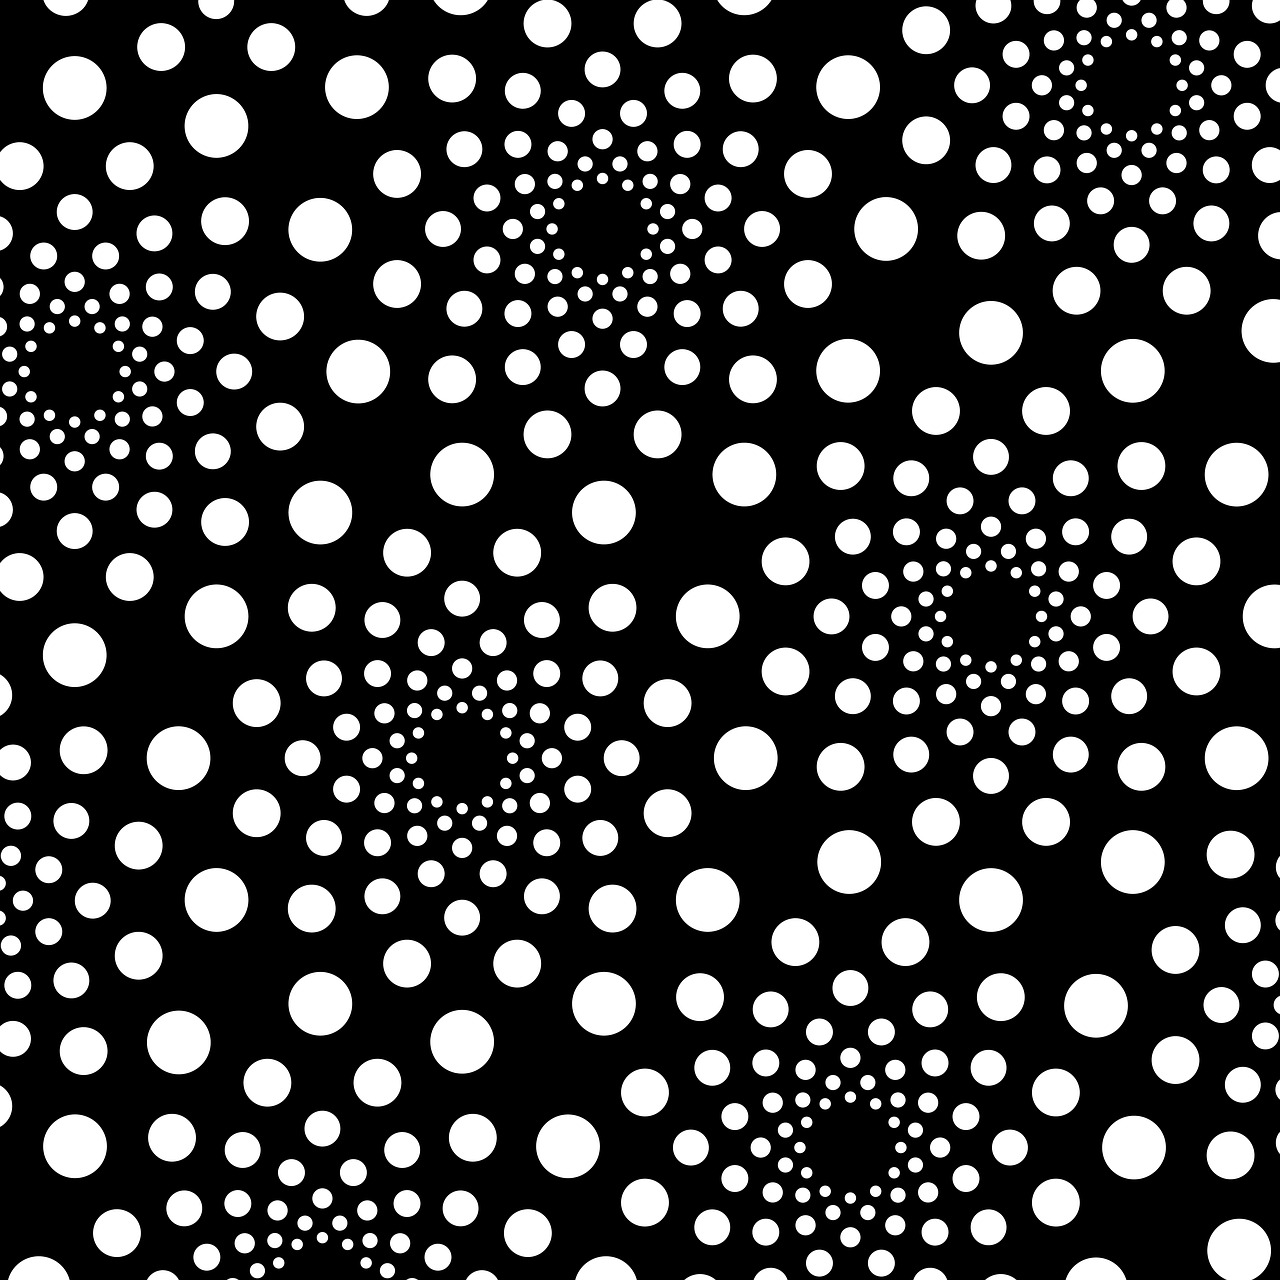 dot dots round free photo